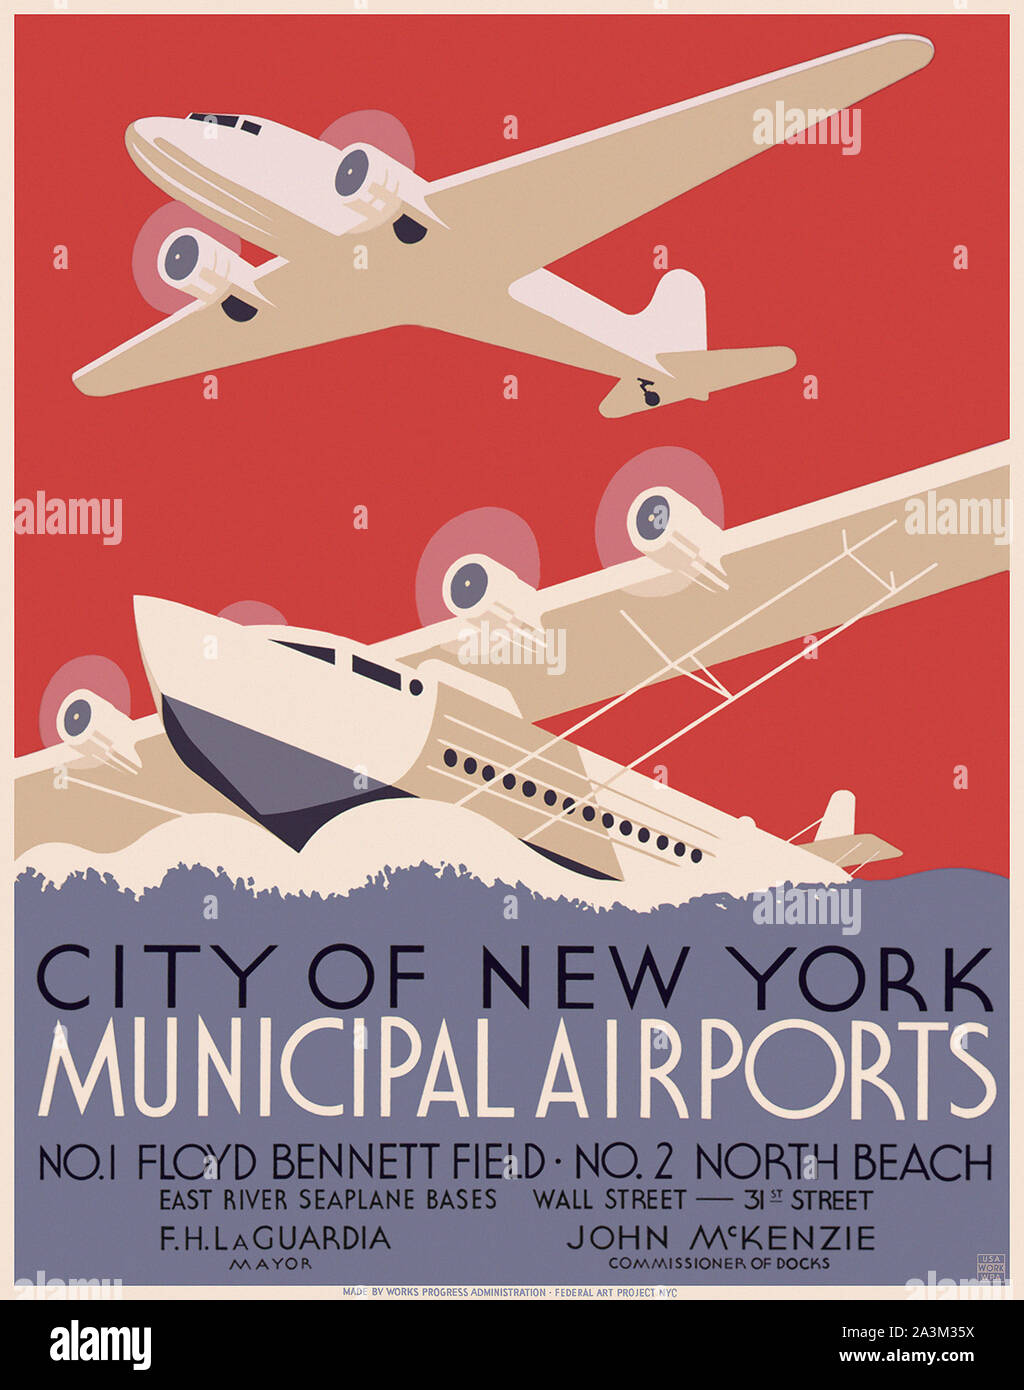 New York City municipal aeroporti - progressi di lavoro Amministrazione - progetto federale di Arte - poster Vintage 1937 Foto Stock